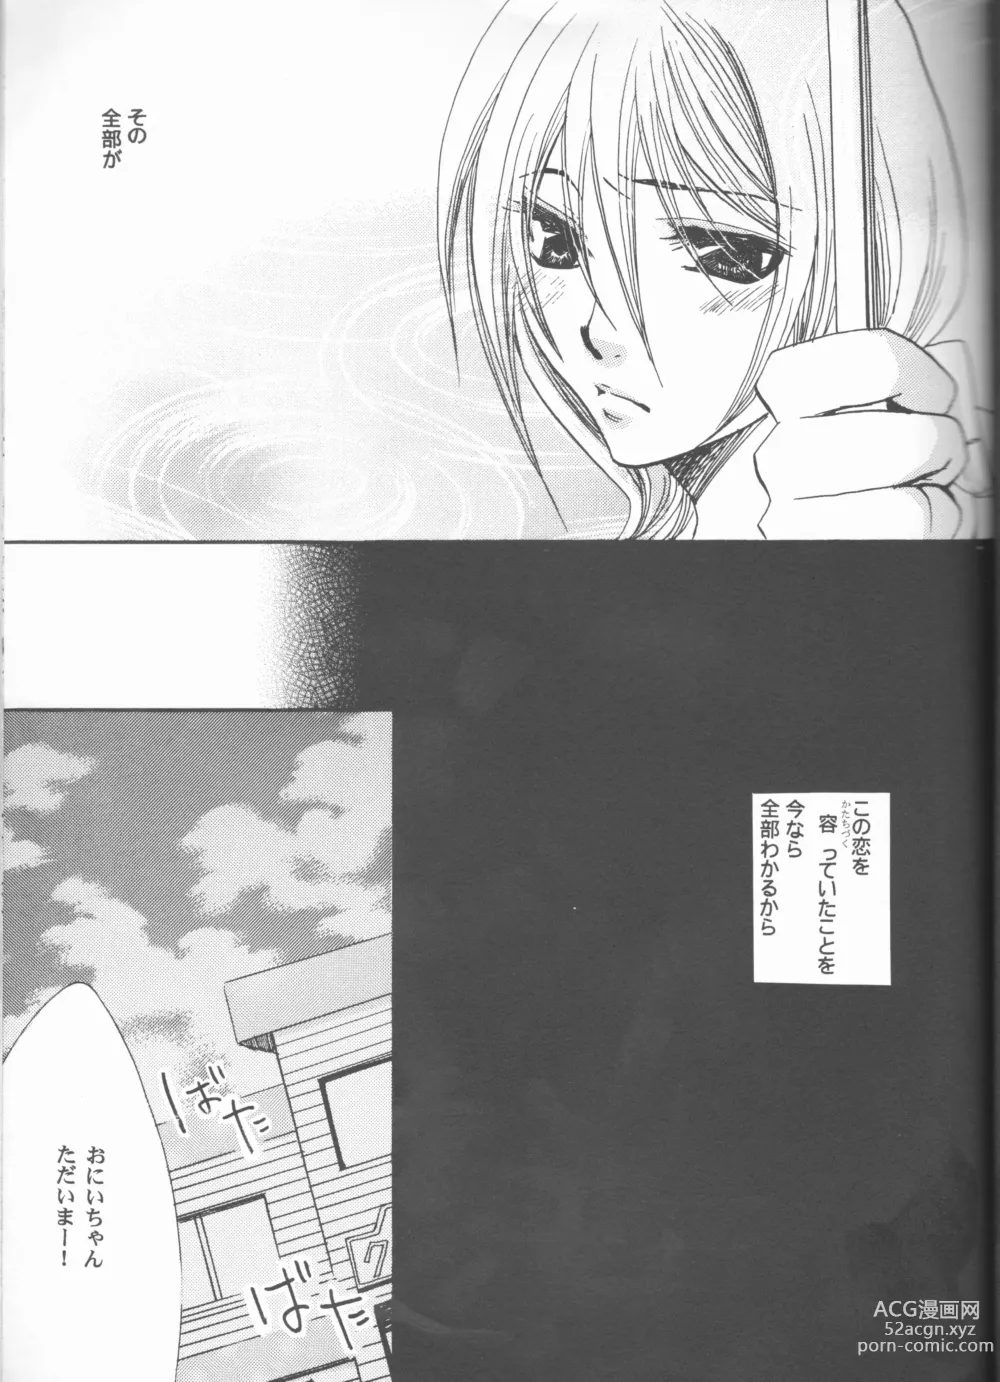 Page 39 of doujinshi Kimi o suki ni natte hajimete no natsu ga kuru.